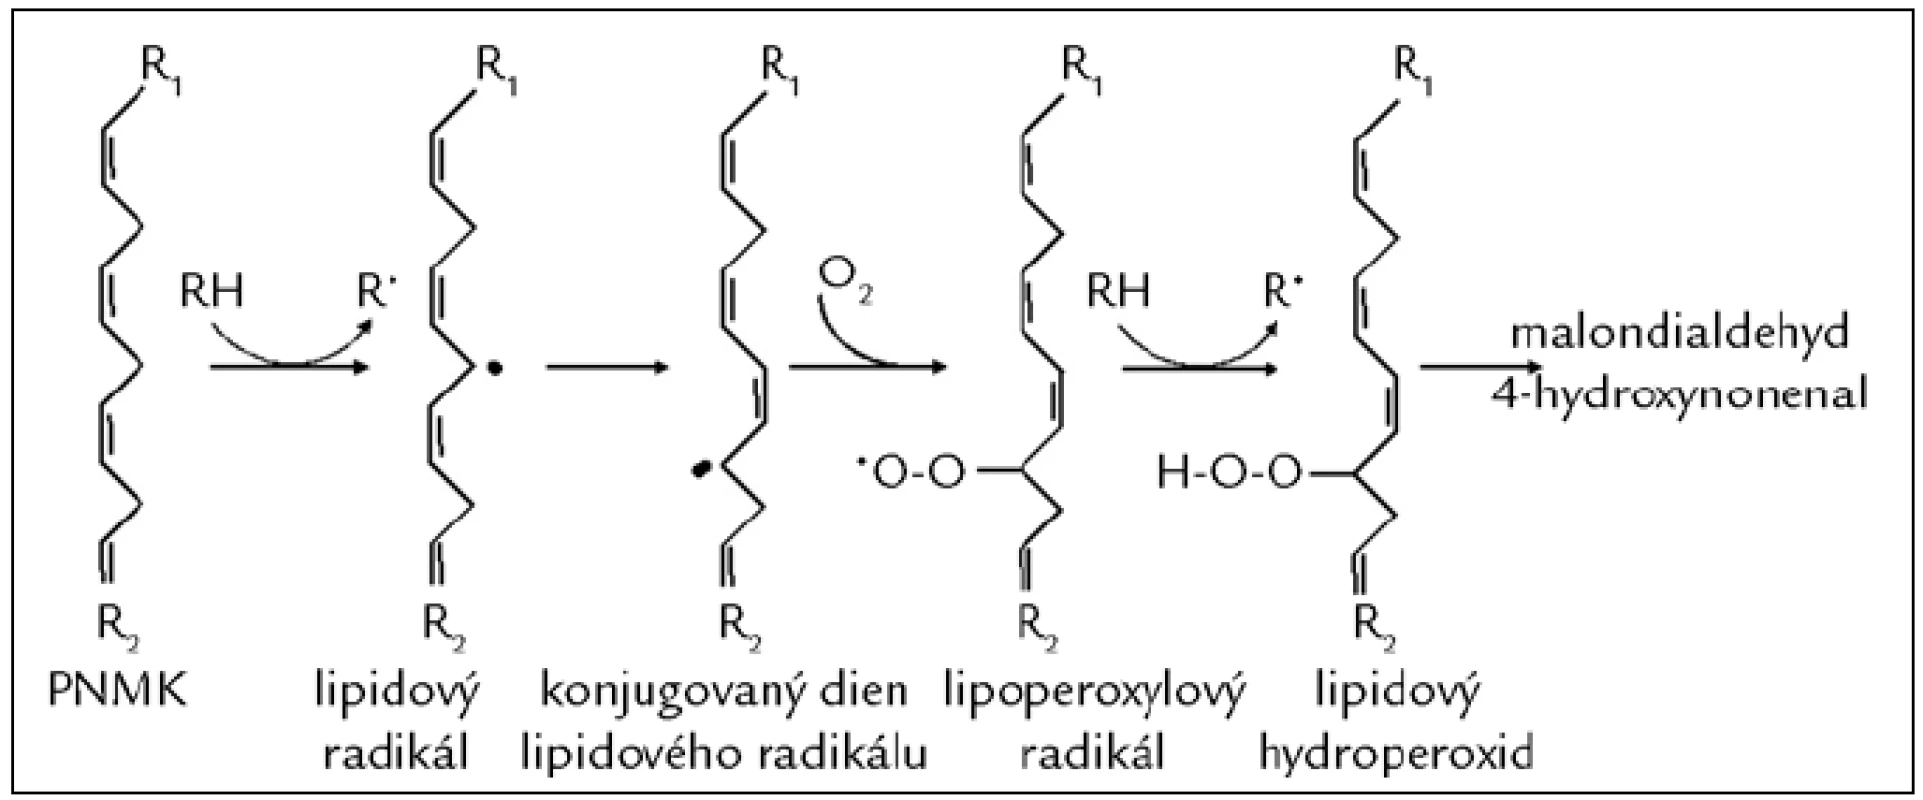 Poškození mastných kyselin působením volných radikálů (peroxidace lipidů). Proces lipoperoxidace začíná odejmutím vodíkového atomu z metylenové skupiny polynenasycené mastné kyseliny (PNMK; např. působením HO&lt;sup&gt;•&lt;/sup&gt;) za vzniku lipidového radikálu. Následně dochází k přesunu vazeb a vzniku konjugovaného dienu, který snadno reaguje s molekulárním kyslíkem za vzniku lipoperoxylového radikálu. Ten může reagovat s další PNMK za vzniku dienů, hydroperoxidů a peroxidů, které jsou dále štěpeny za vzniku reaktivních strukturně rozmanitých derivátů uhlovodíků, např. alkanalů (malondialdehydu), alkenolů a jejich hydroxyderivátů (4-hydroxynonenalu).